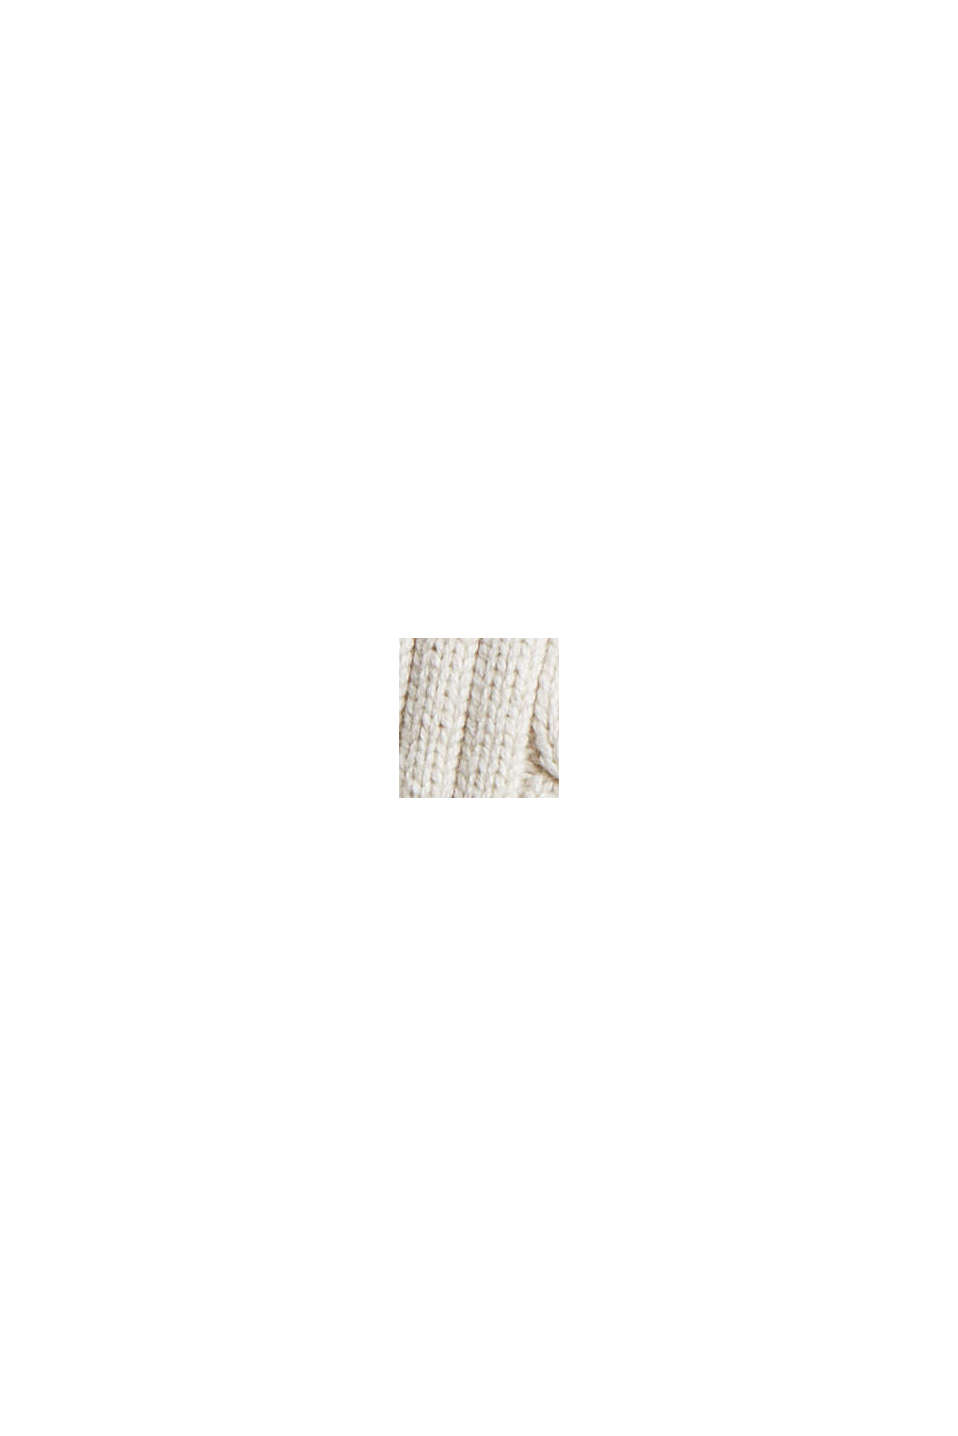 Pullover con maglia a treccia in cotone biologico, OFF WHITE, swatch